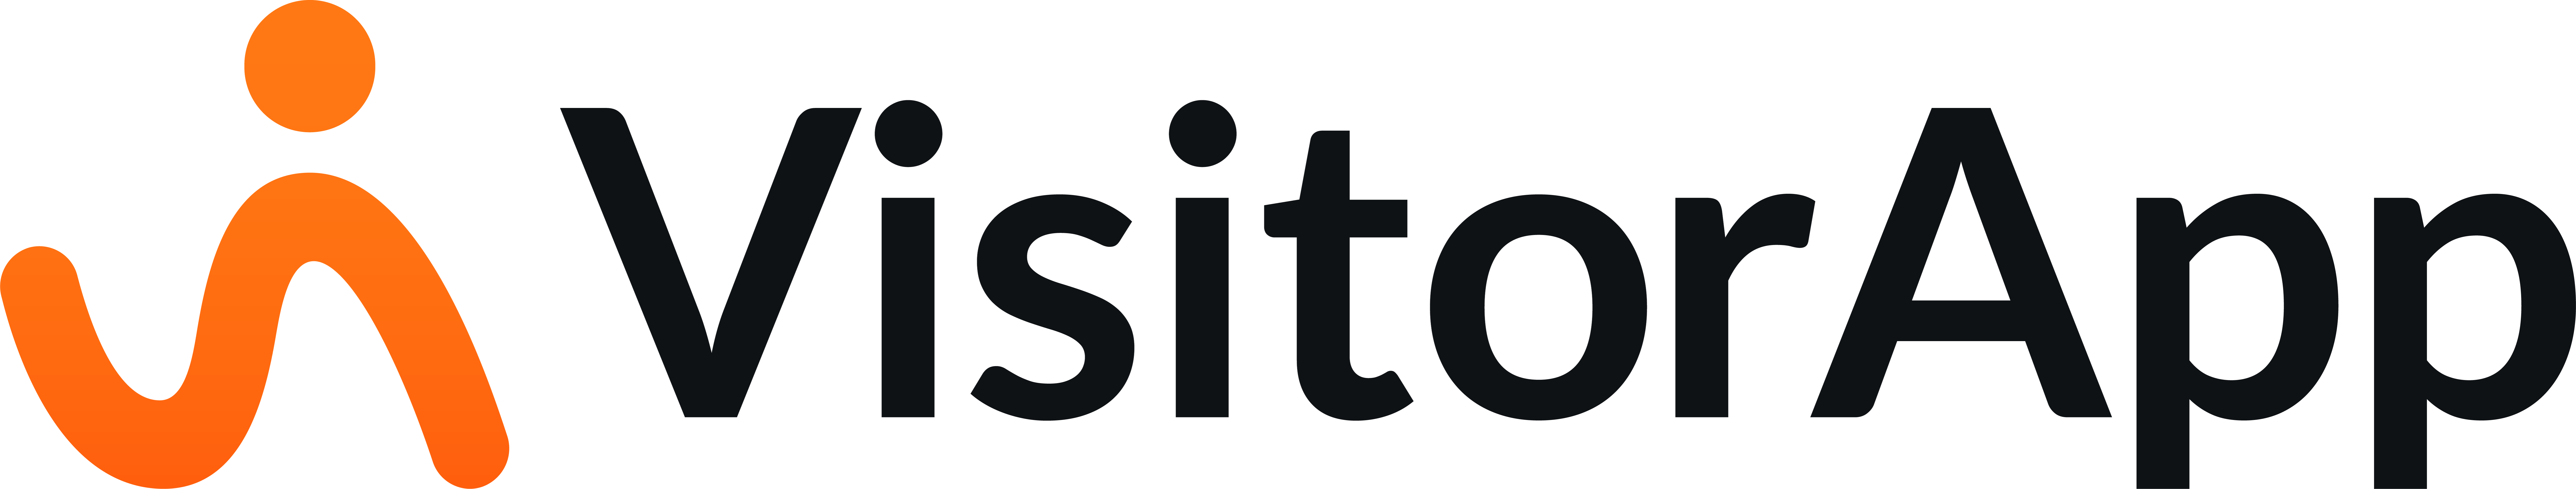 VistorApp logo